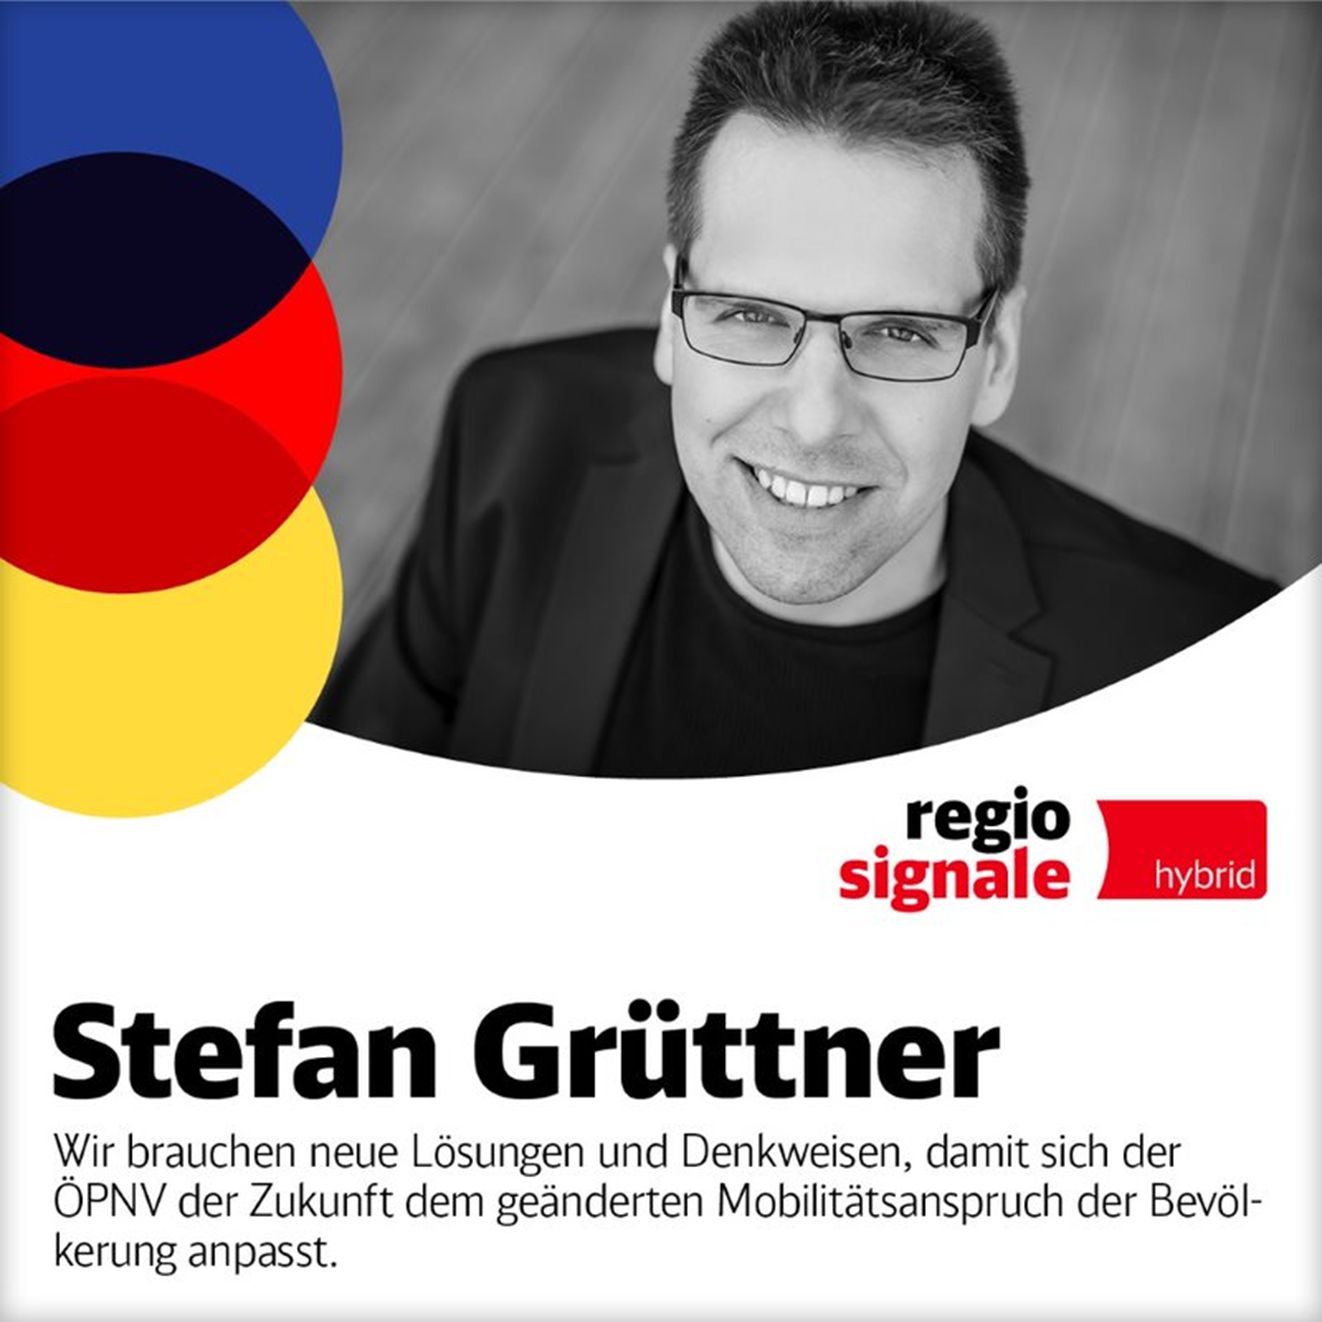 Stefan Grüttner